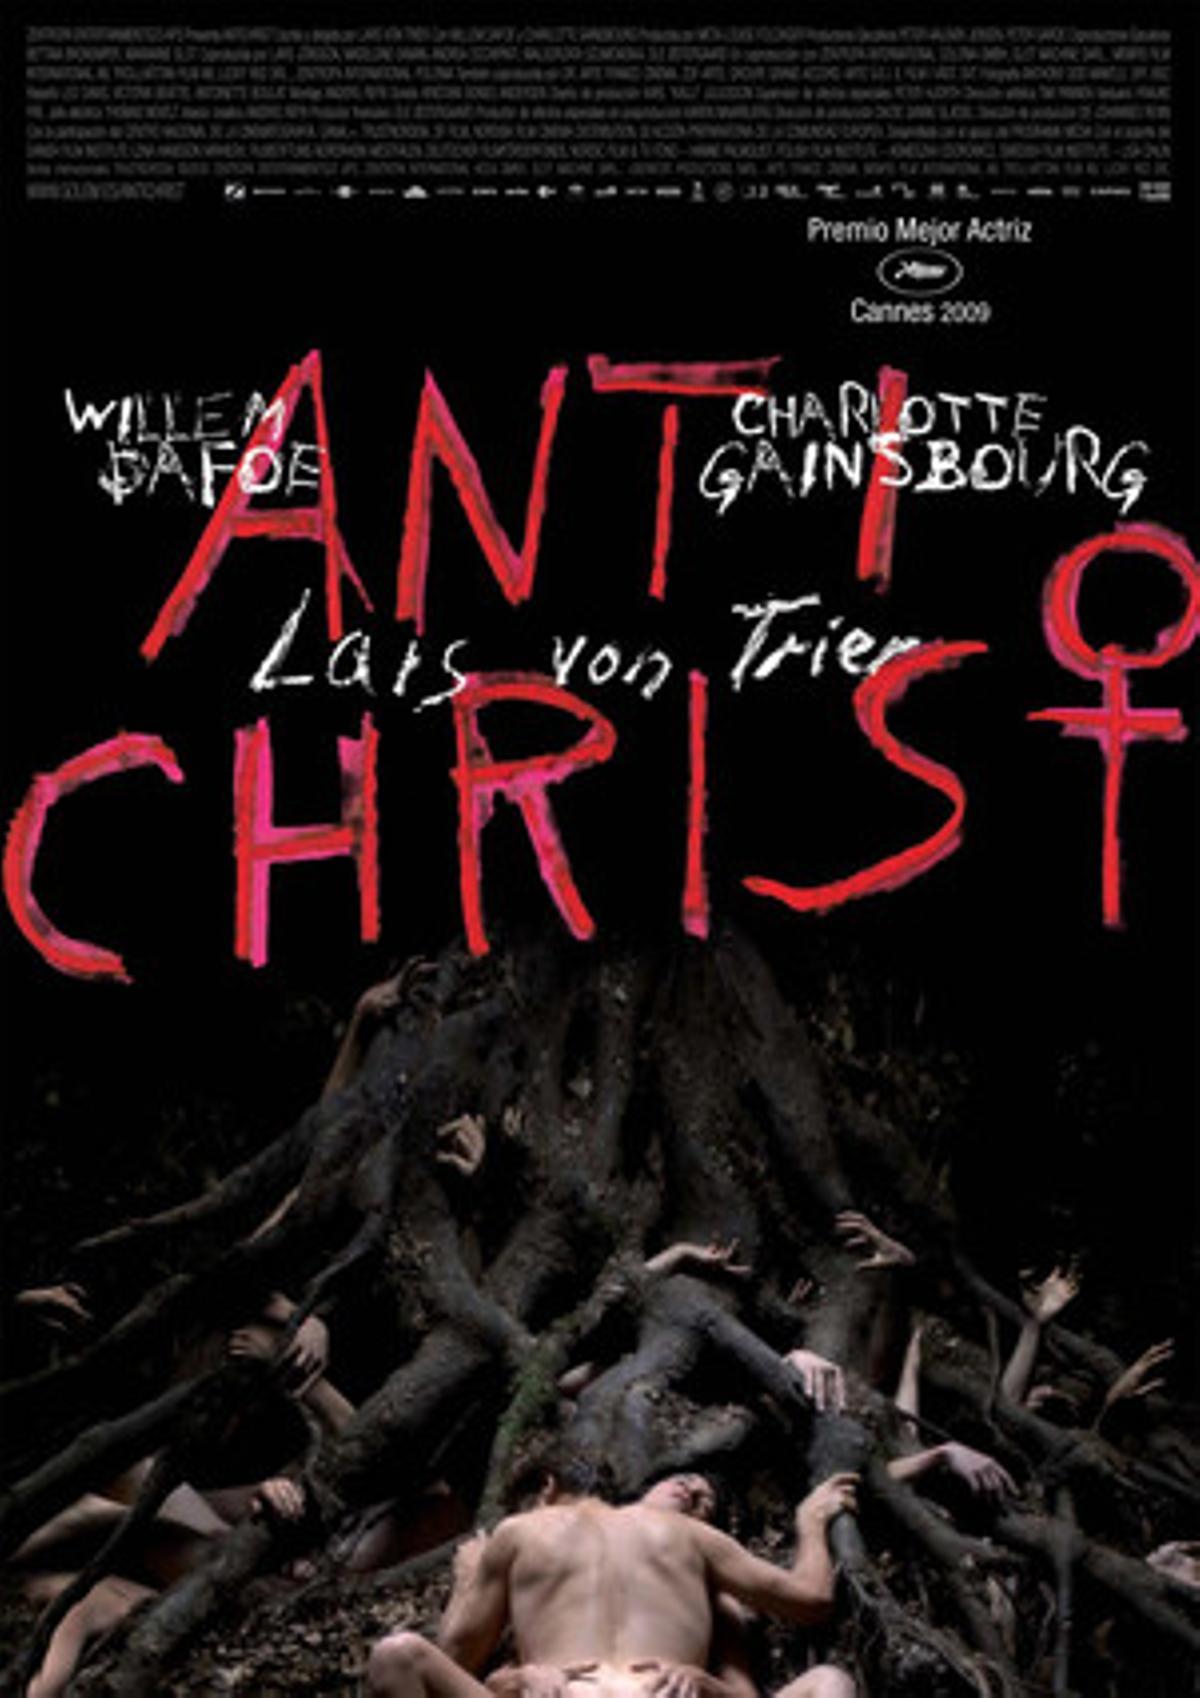 Caràtula de la pel·lícula ’Anticristo’, de Lars von Trier.